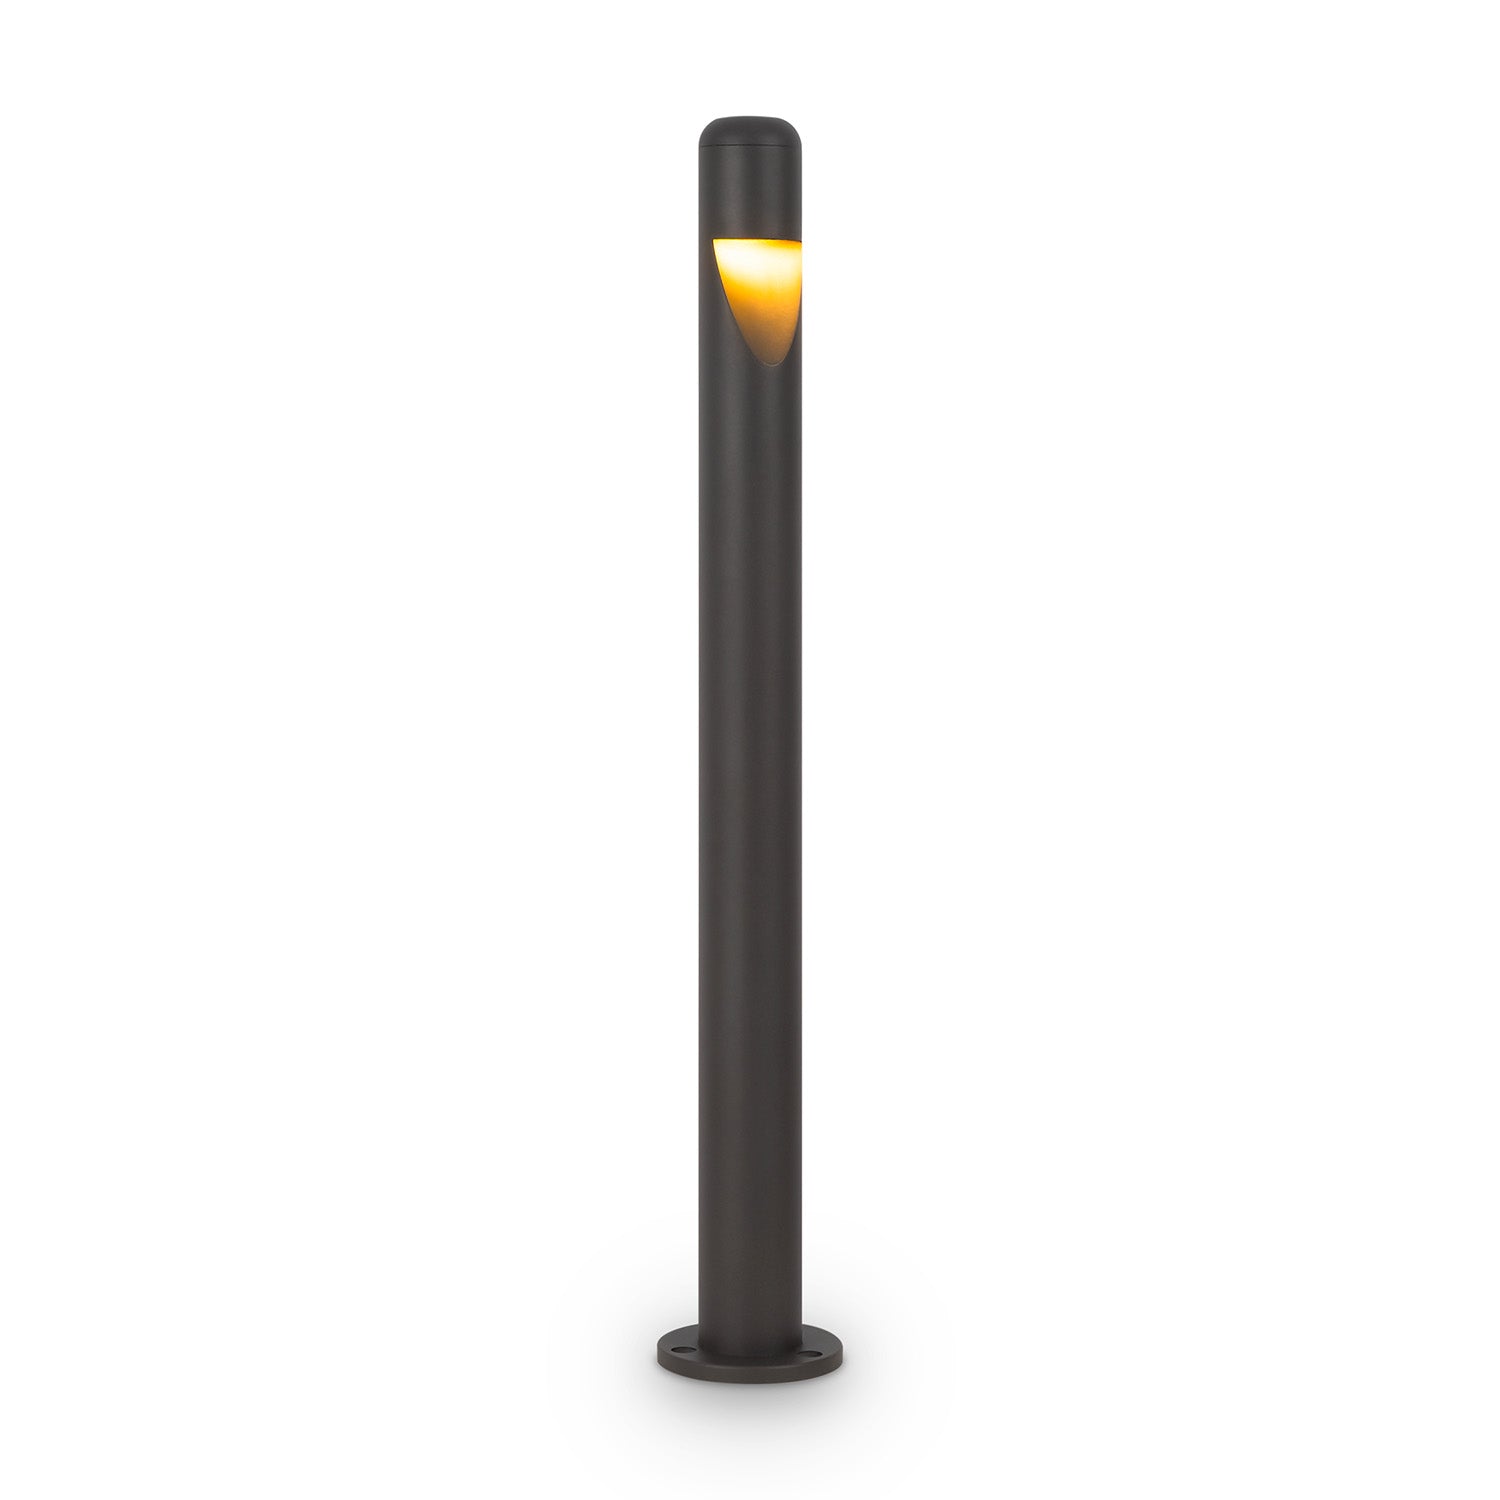 HAGEN - Design black outdoor lamp, waterproof and resistant